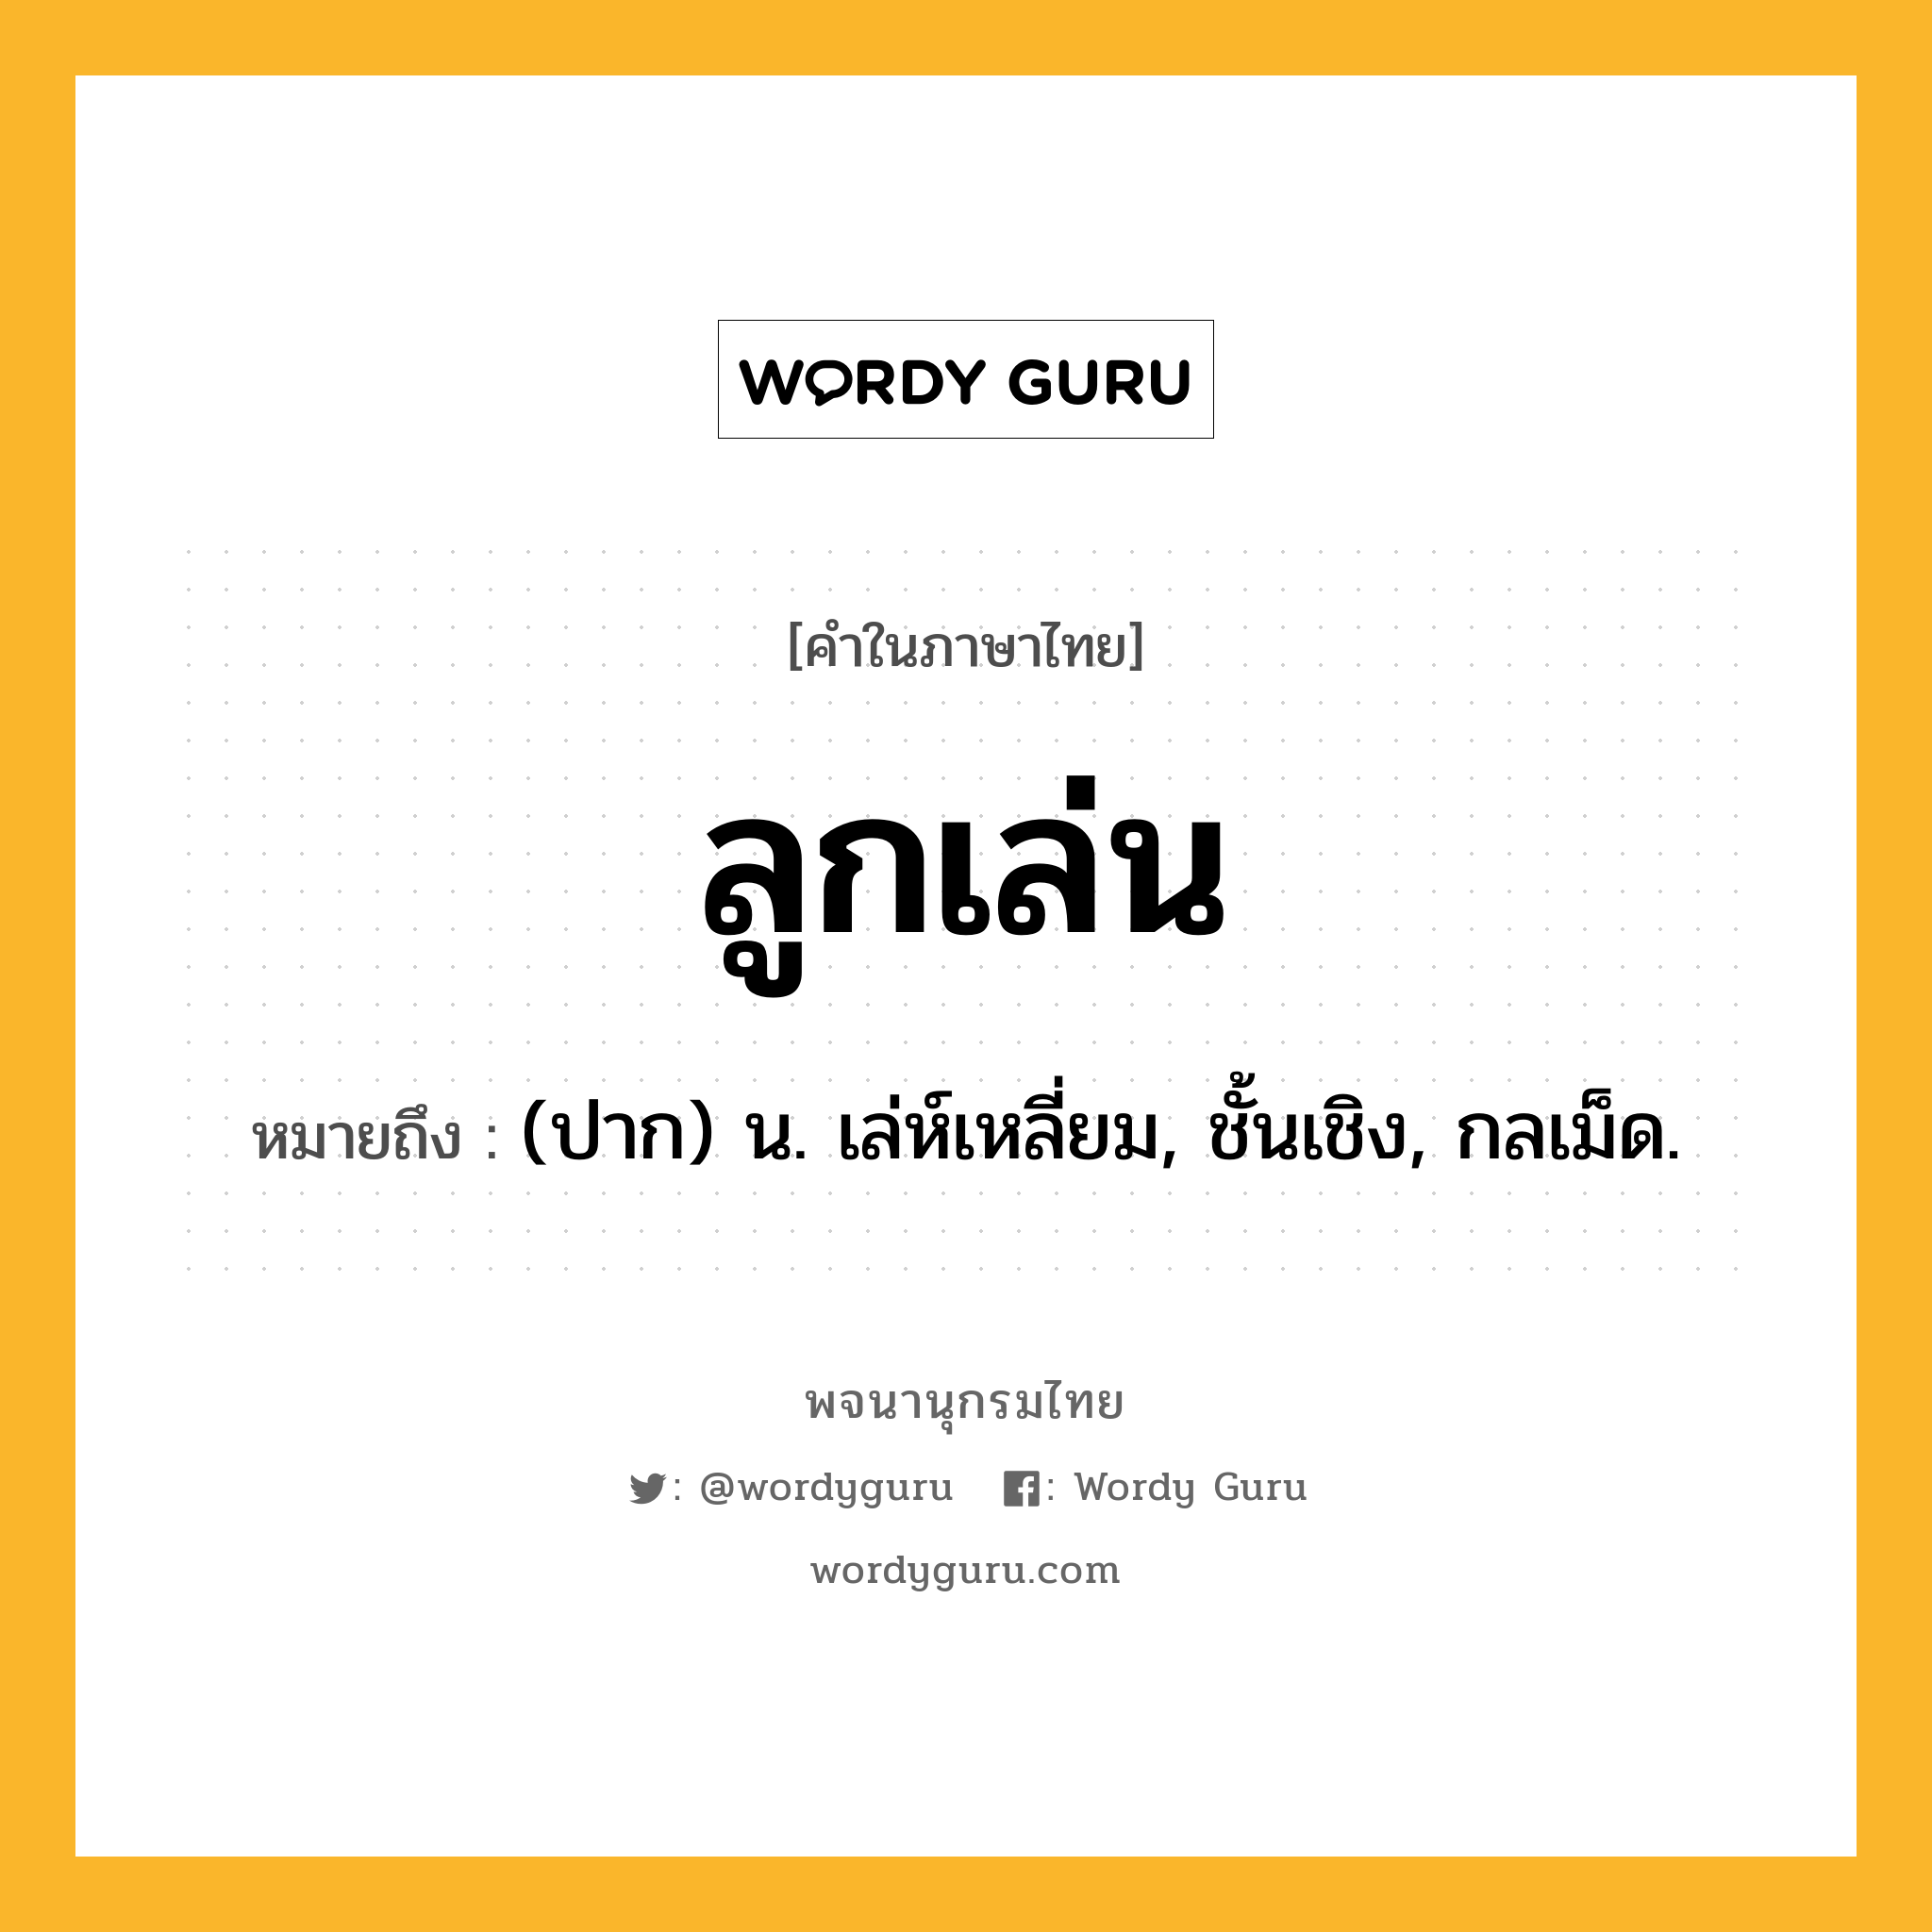 ลูกเล่น หมายถึงอะไร?, คำในภาษาไทย ลูกเล่น หมายถึง (ปาก) น. เล่ห์เหลี่ยม, ชั้นเชิง, กลเม็ด.